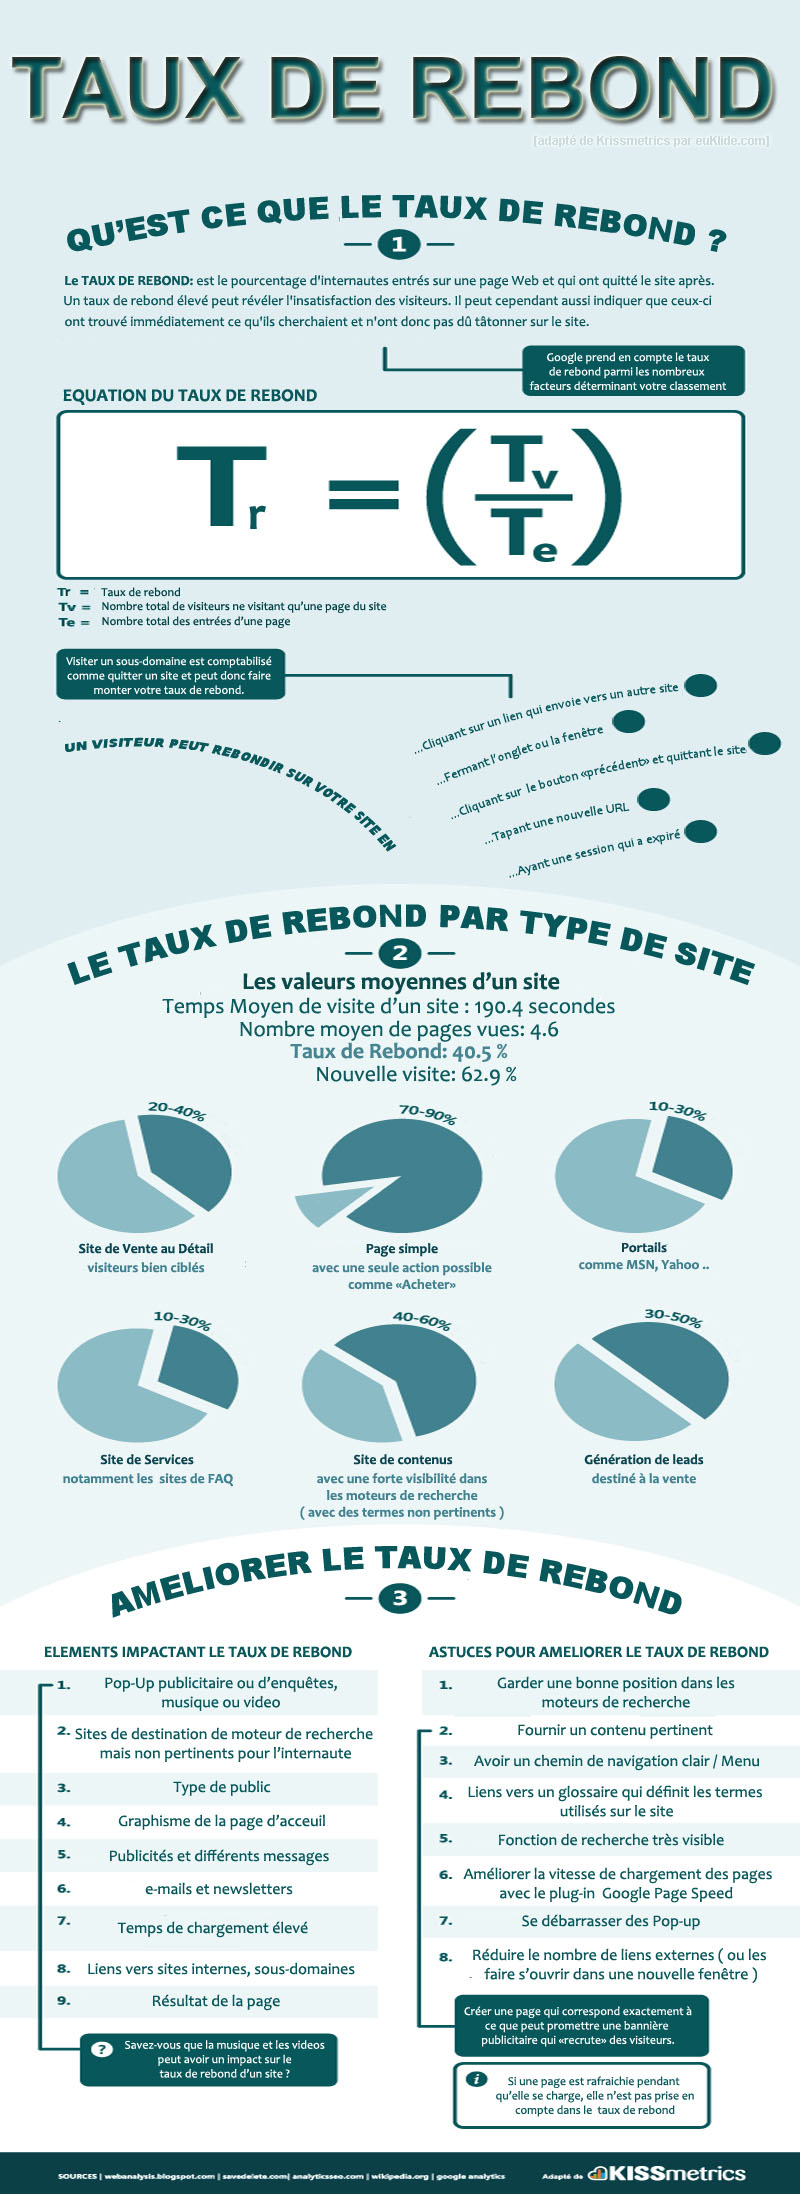 Infographie-Taux-de-Rebond-KISSmetrics-VF